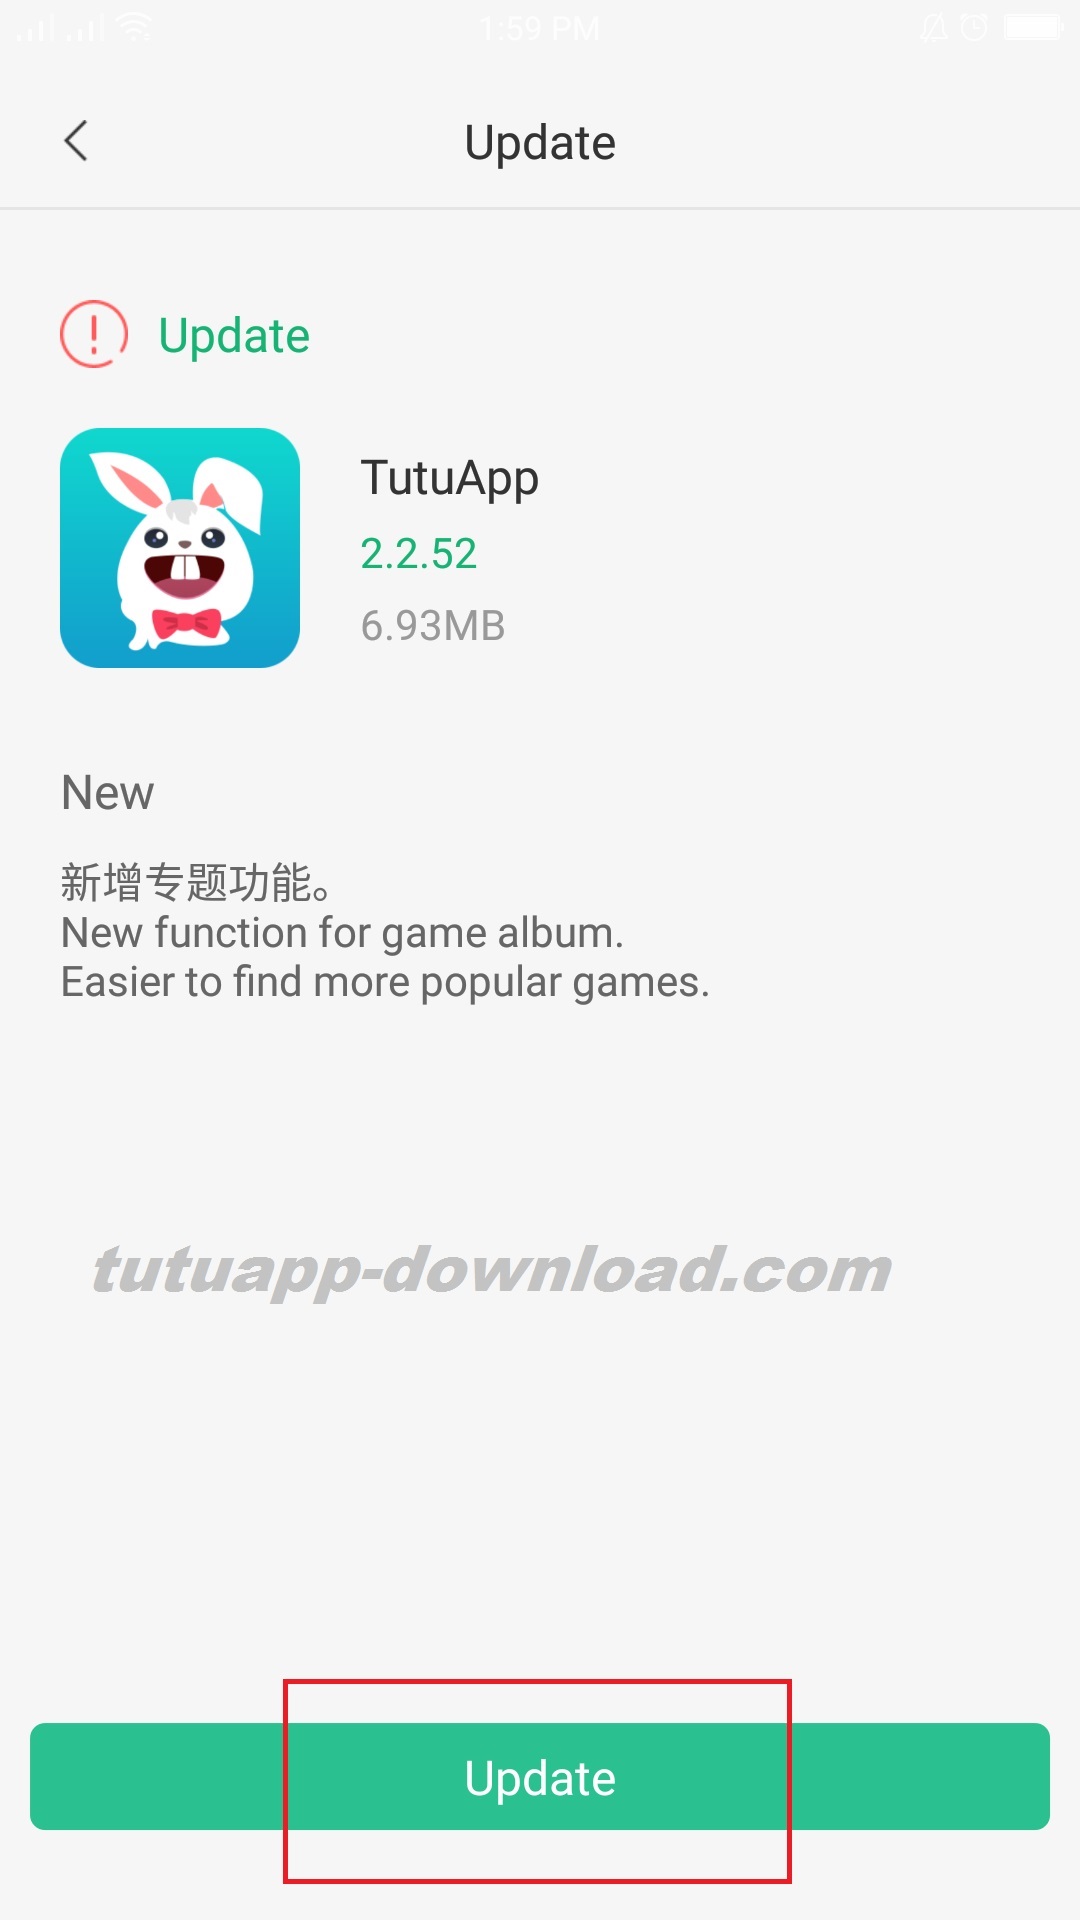 Tutuapp update